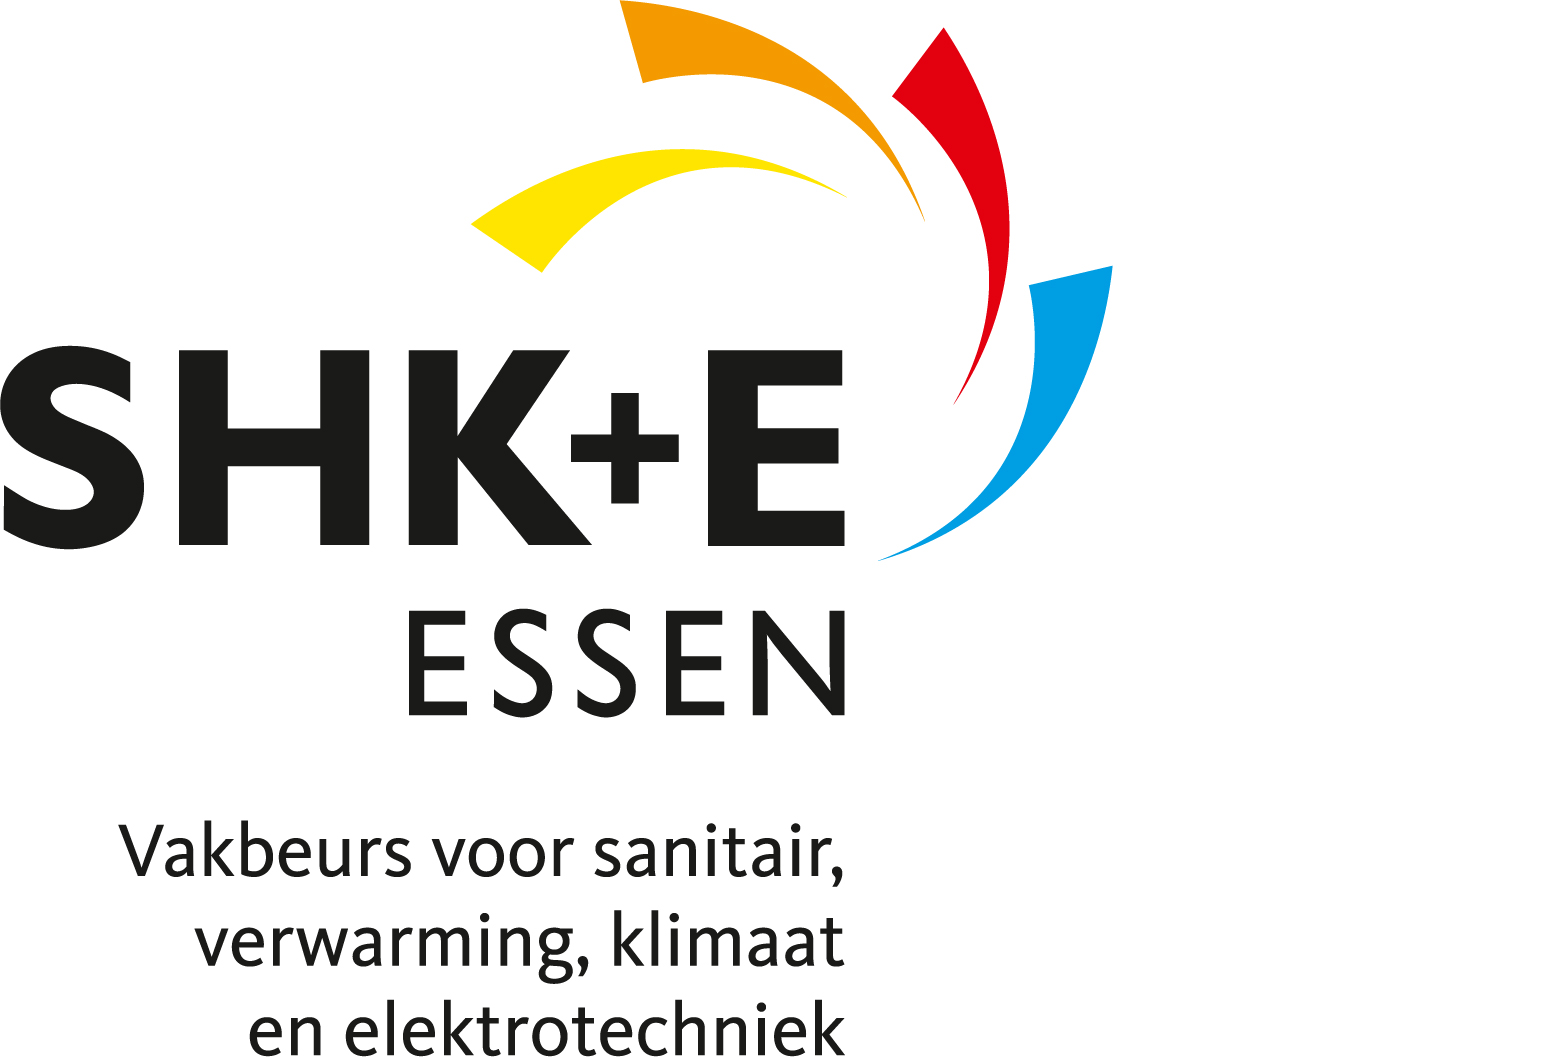 SHK+E ESSEN with claim (Dutch)